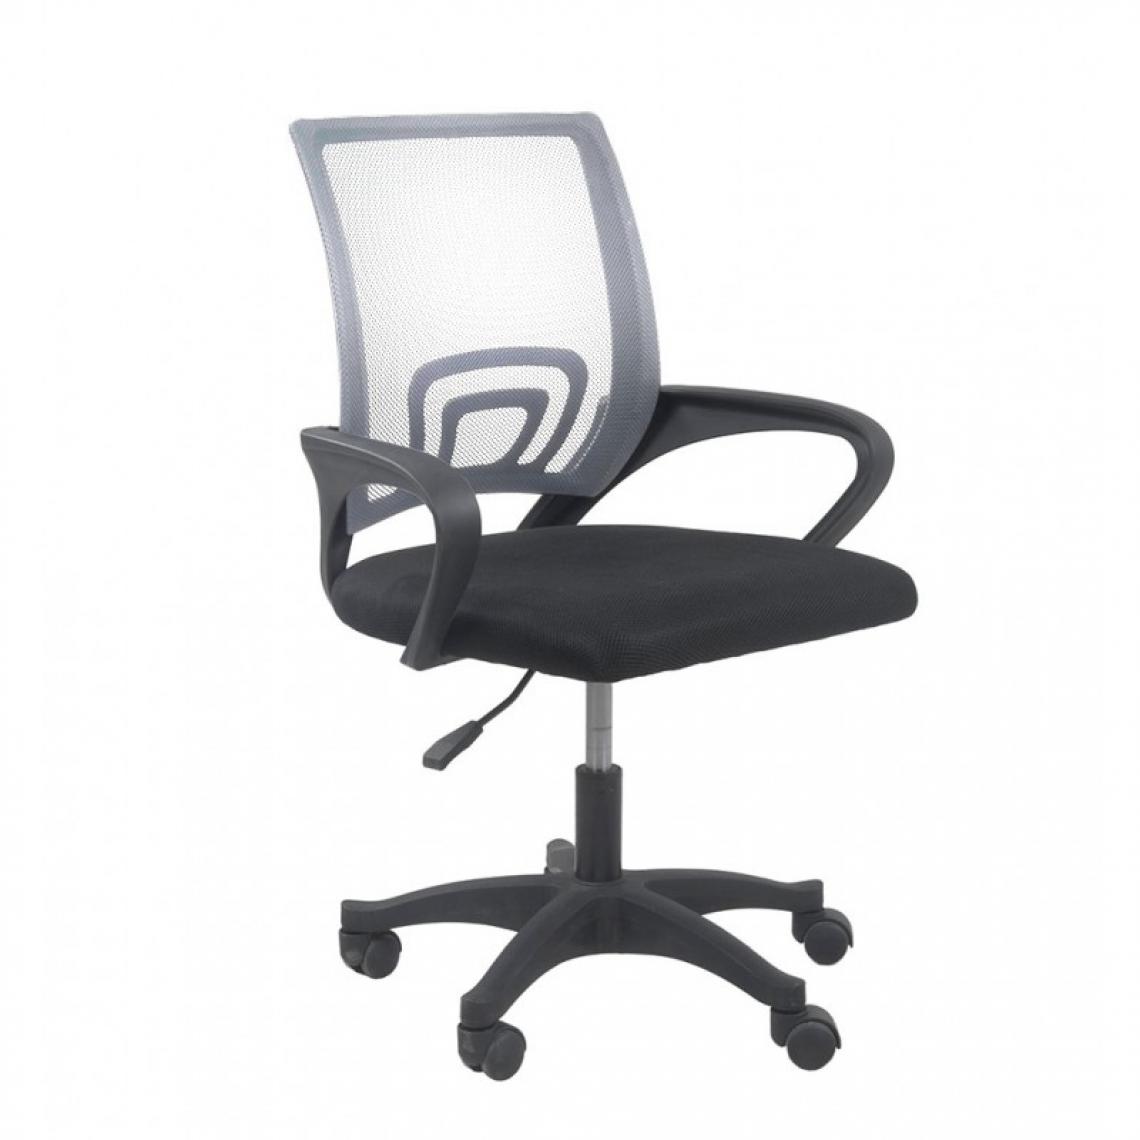 Hucoco - CARISE - Fauteuil de bureau ergonomique - Hauteur ajustable - Avec accoudoirs - Chaise de bureau pivotante - Gris - Chaises